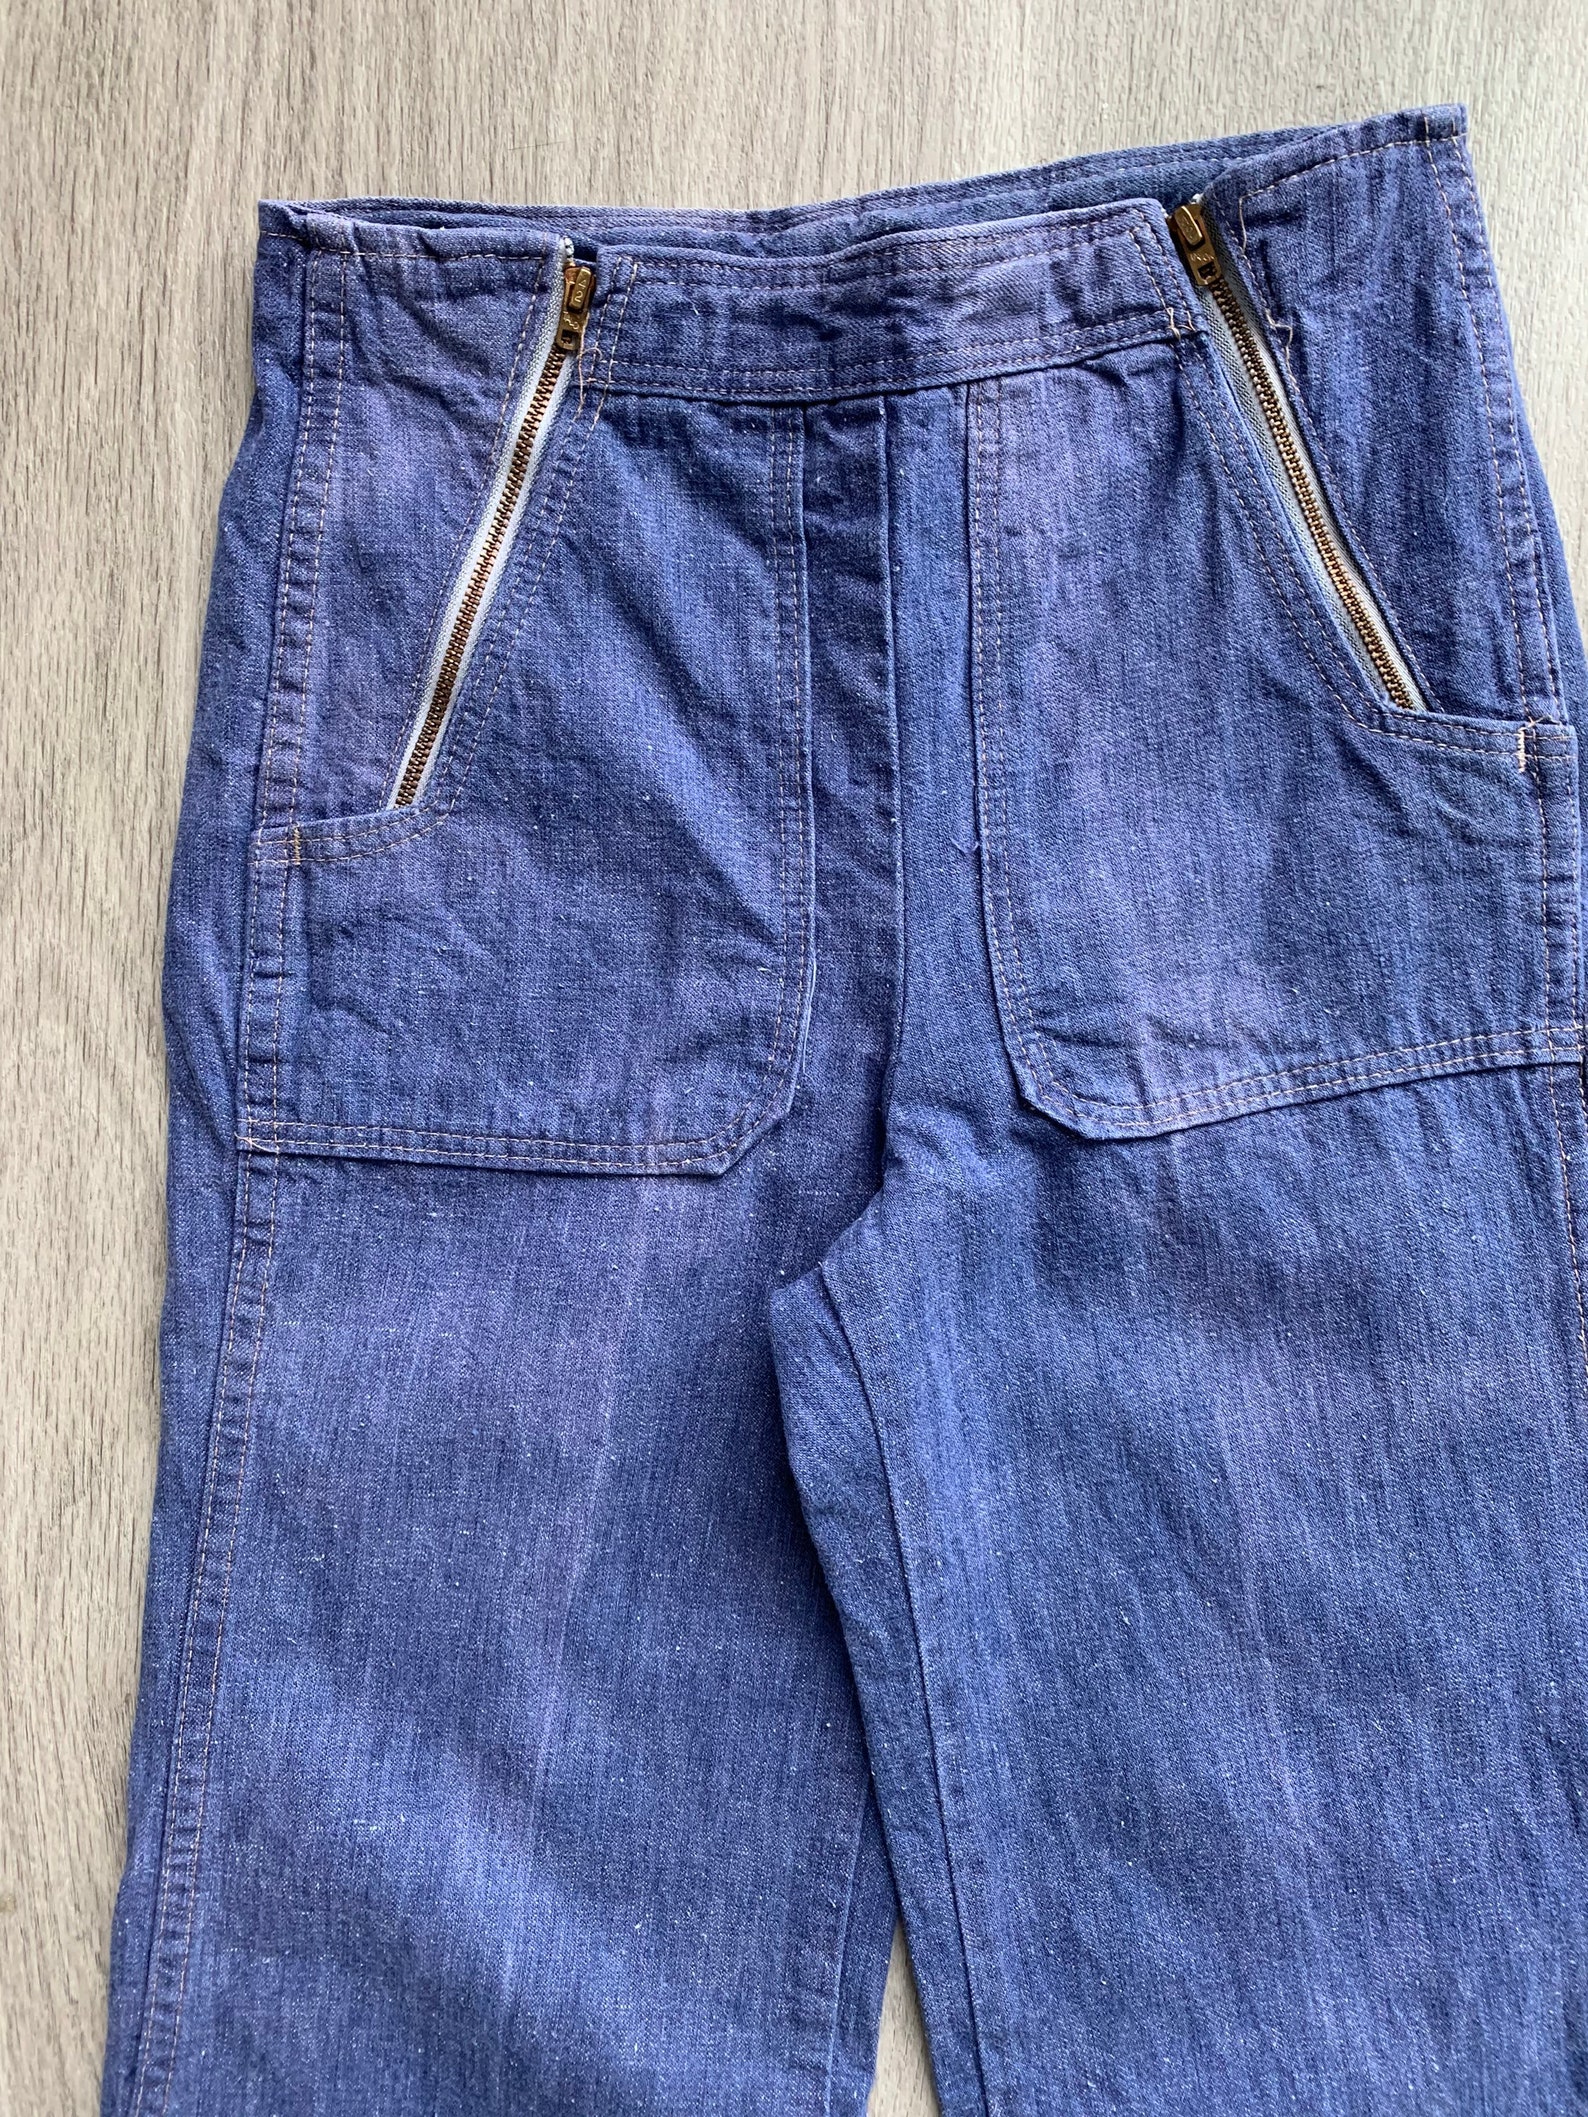 Vintage 1970s Jeans / Double Zipper Mid Rise Medium Wash 70s | Etsy